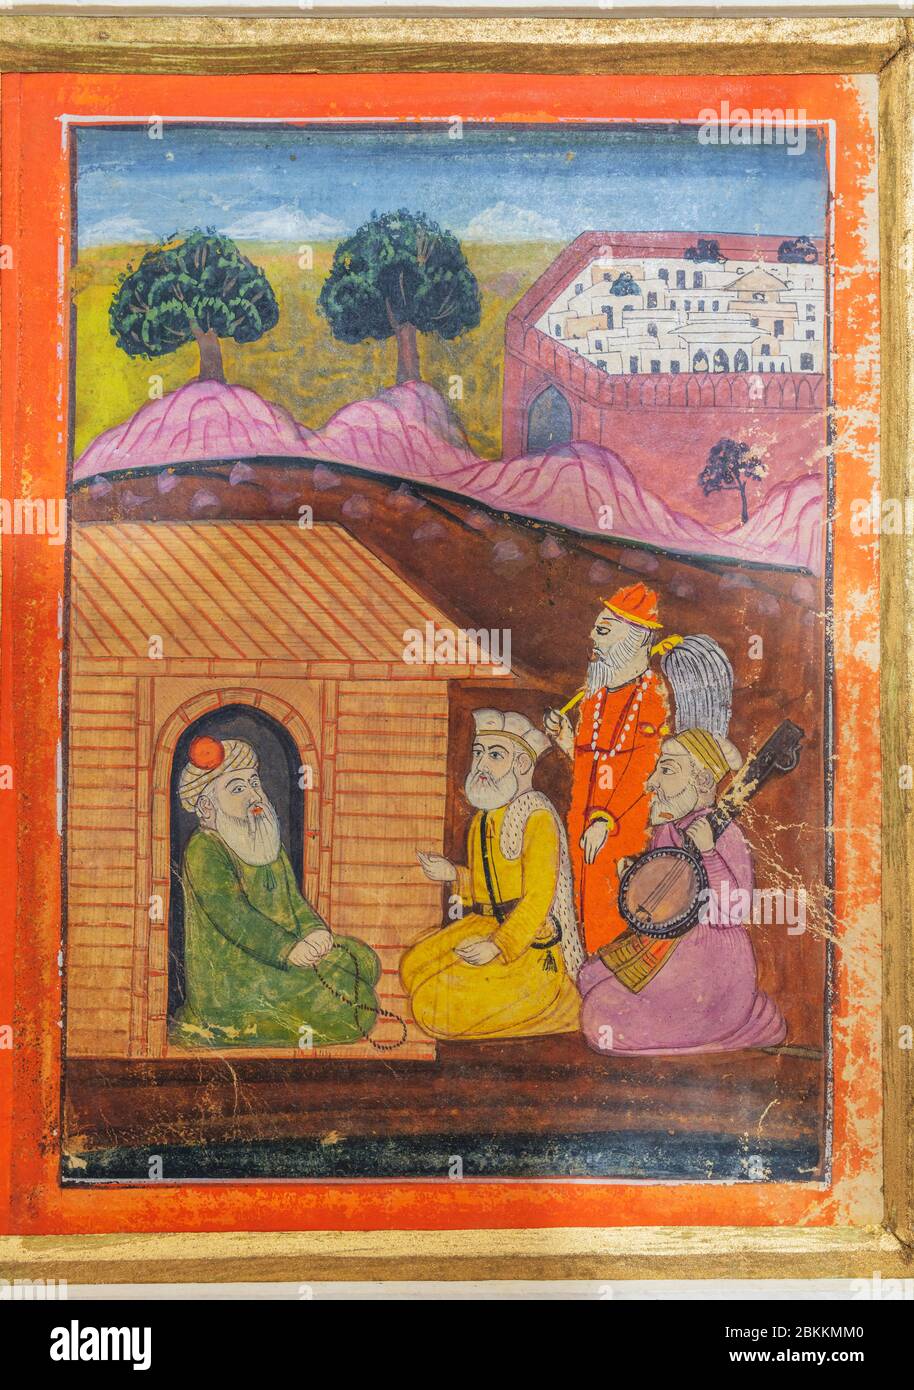 Guru Nanak conversing with Qazi Ruknuddin, 1830s painting, Museum, Delhi, India Stock Photo